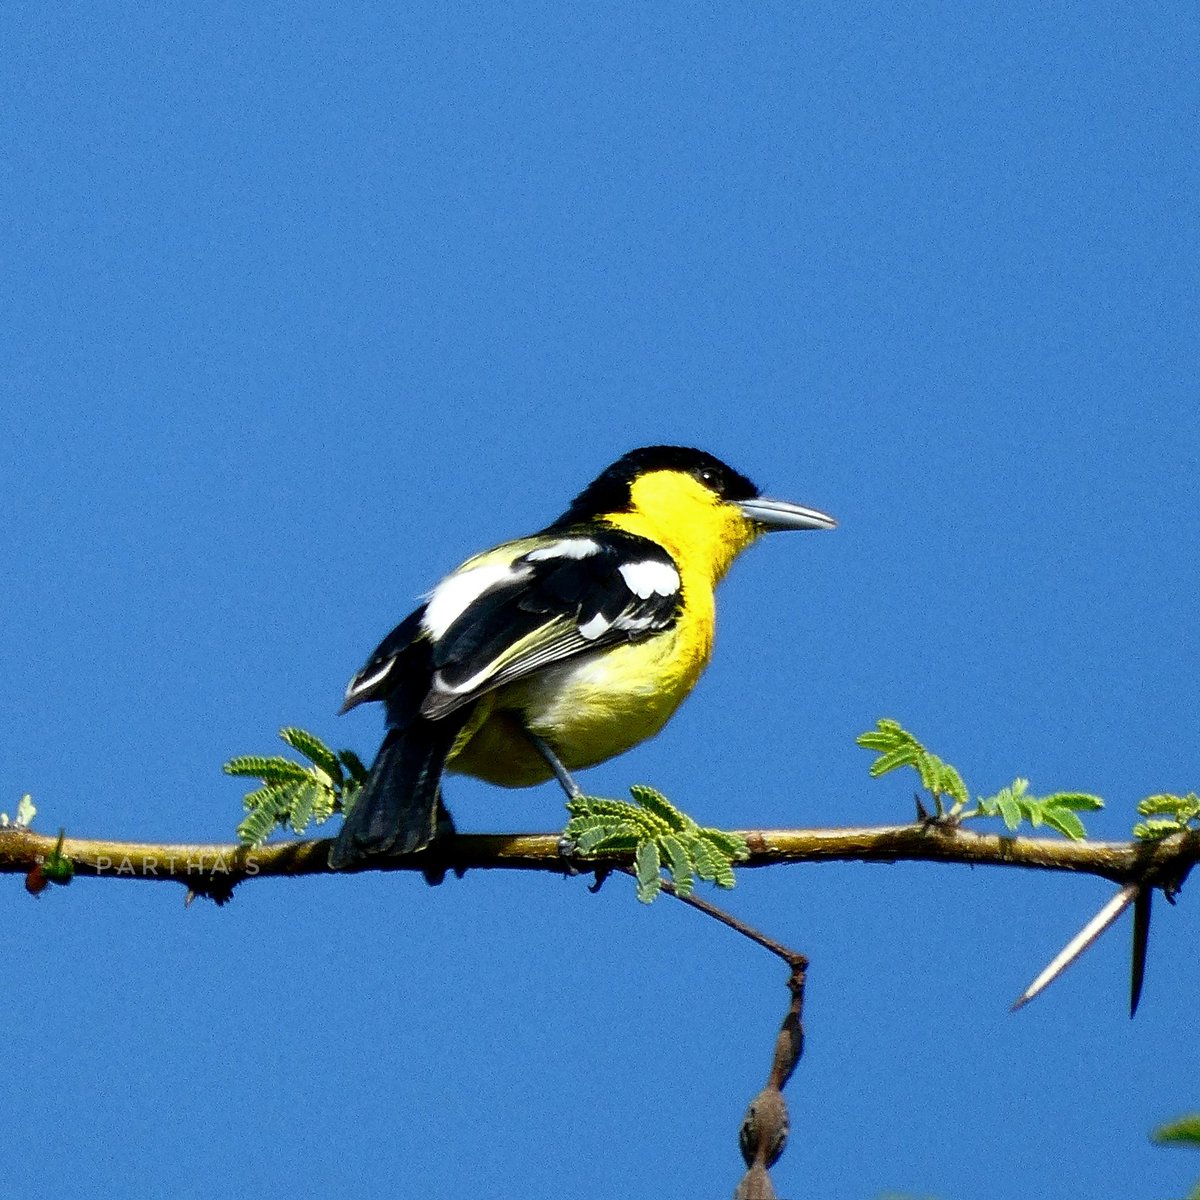 How i saw it - Common Iora.
@IndiAves @lumix_india #VIBGYORinNature @Britnatureguide @NatGeoIndia @natgeowild #BirdsOfTwitter #BirdsSeenIn2023 #TwitterNatureCommunity #ThePhotoHour #BBCWildlifePOTD #NaturePhotographyDay #NaturePhotograhpy